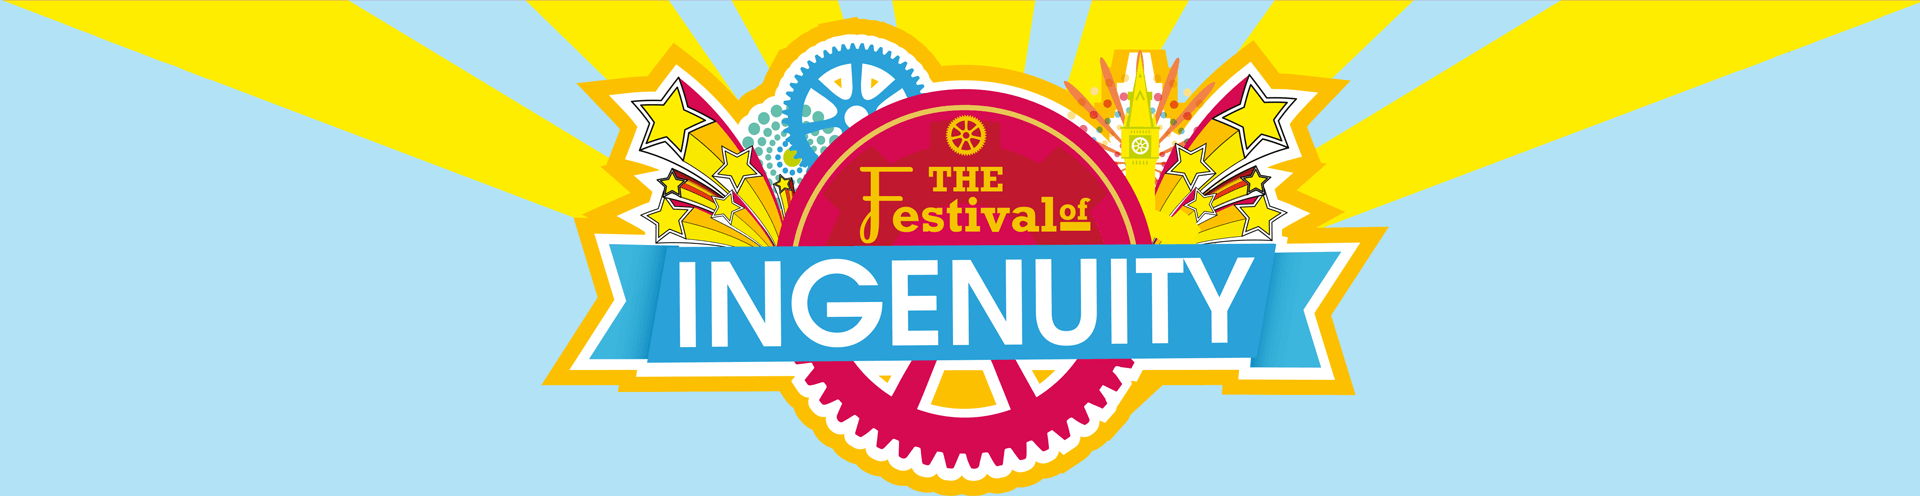 Festival of Ingenuity